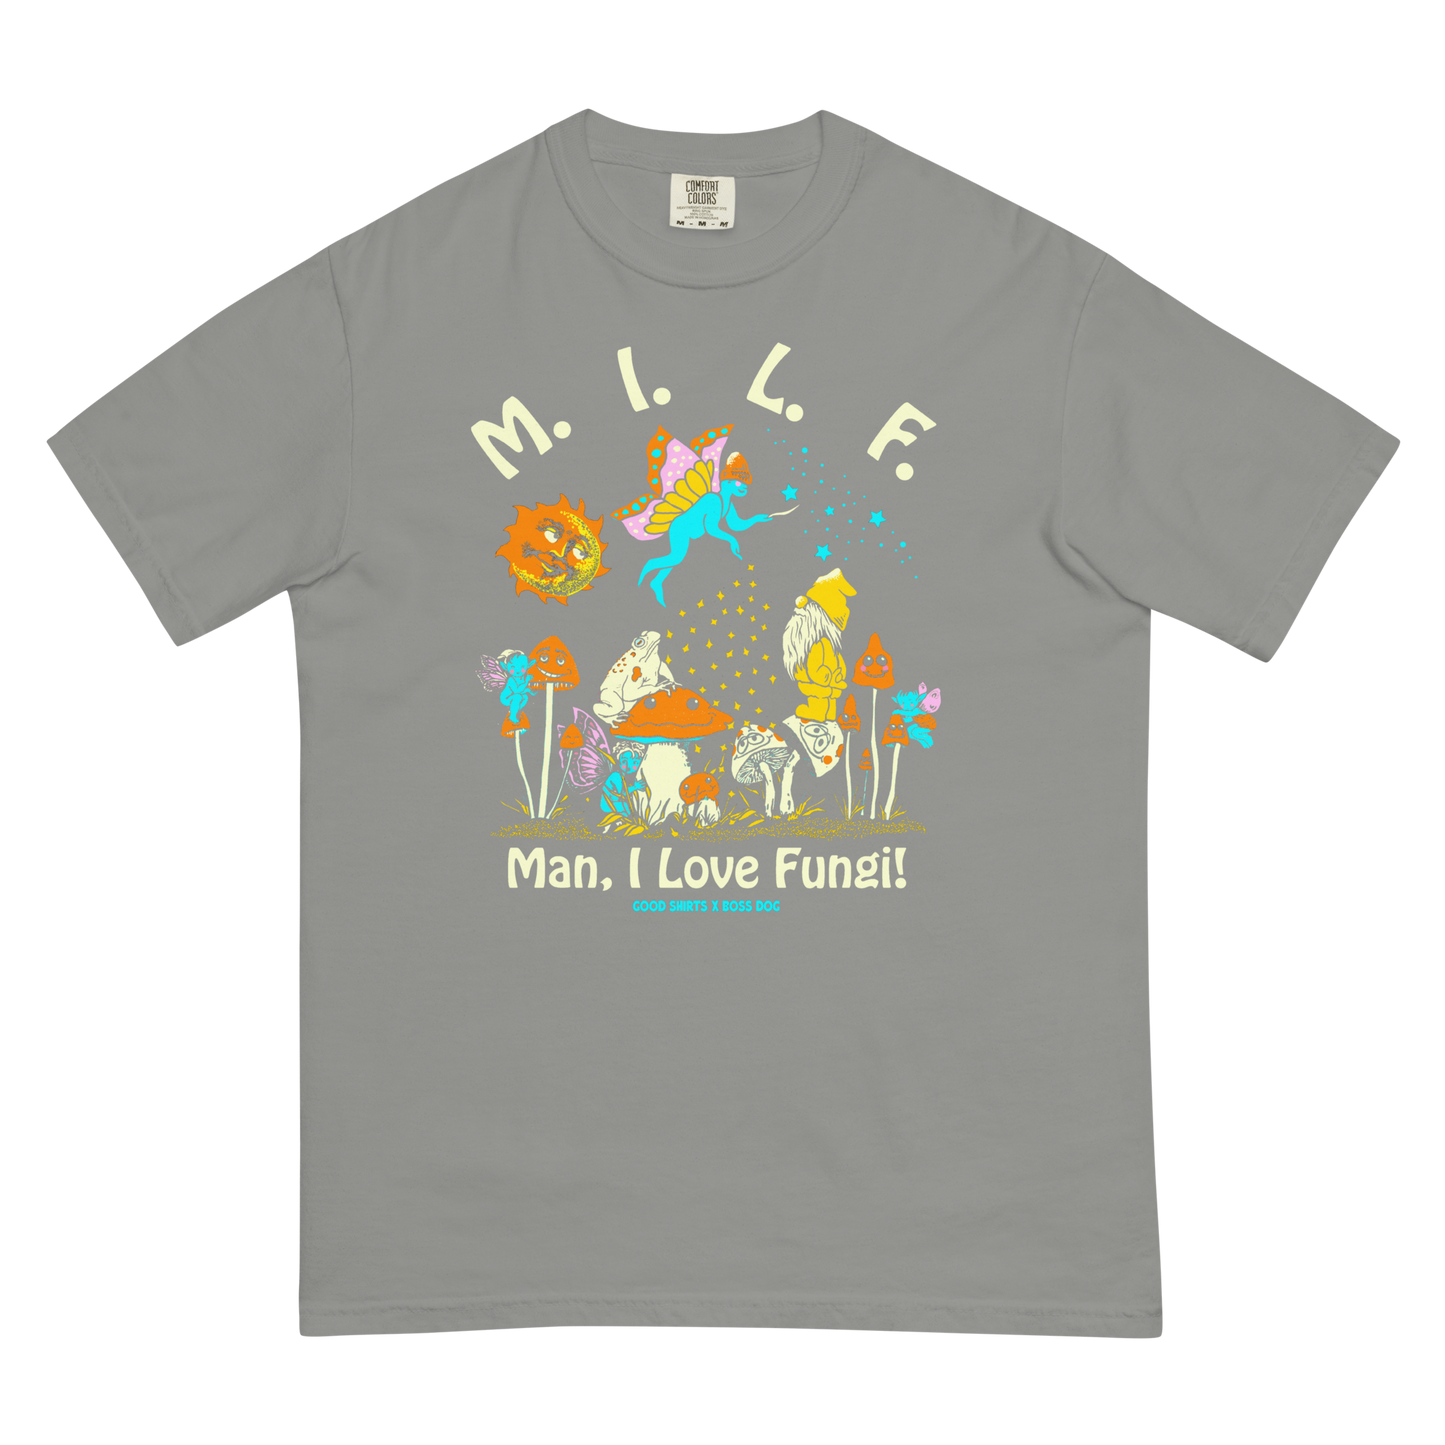 M.I.L.F. (Man I Love Fungi) by Boss Dog x Good Shirts.